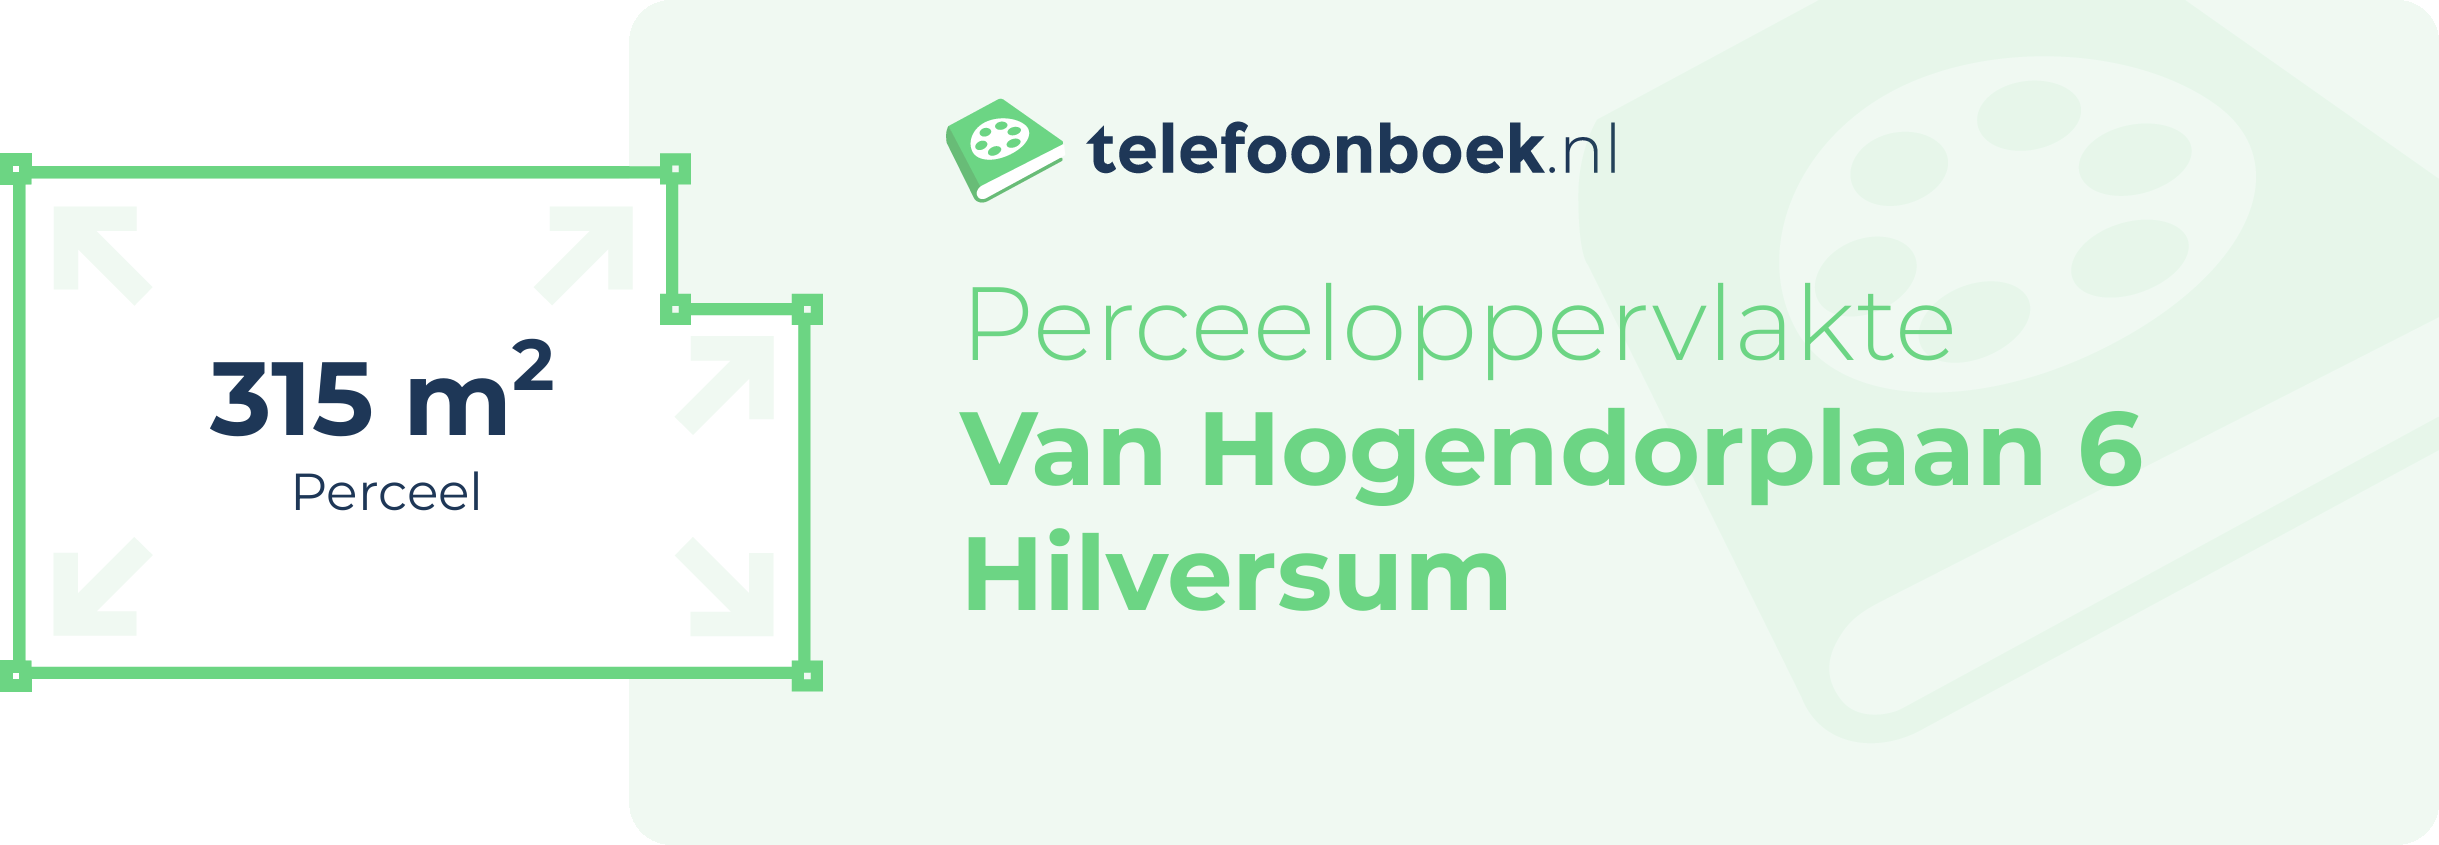 Perceeloppervlakte Van Hogendorplaan 6 Hilversum